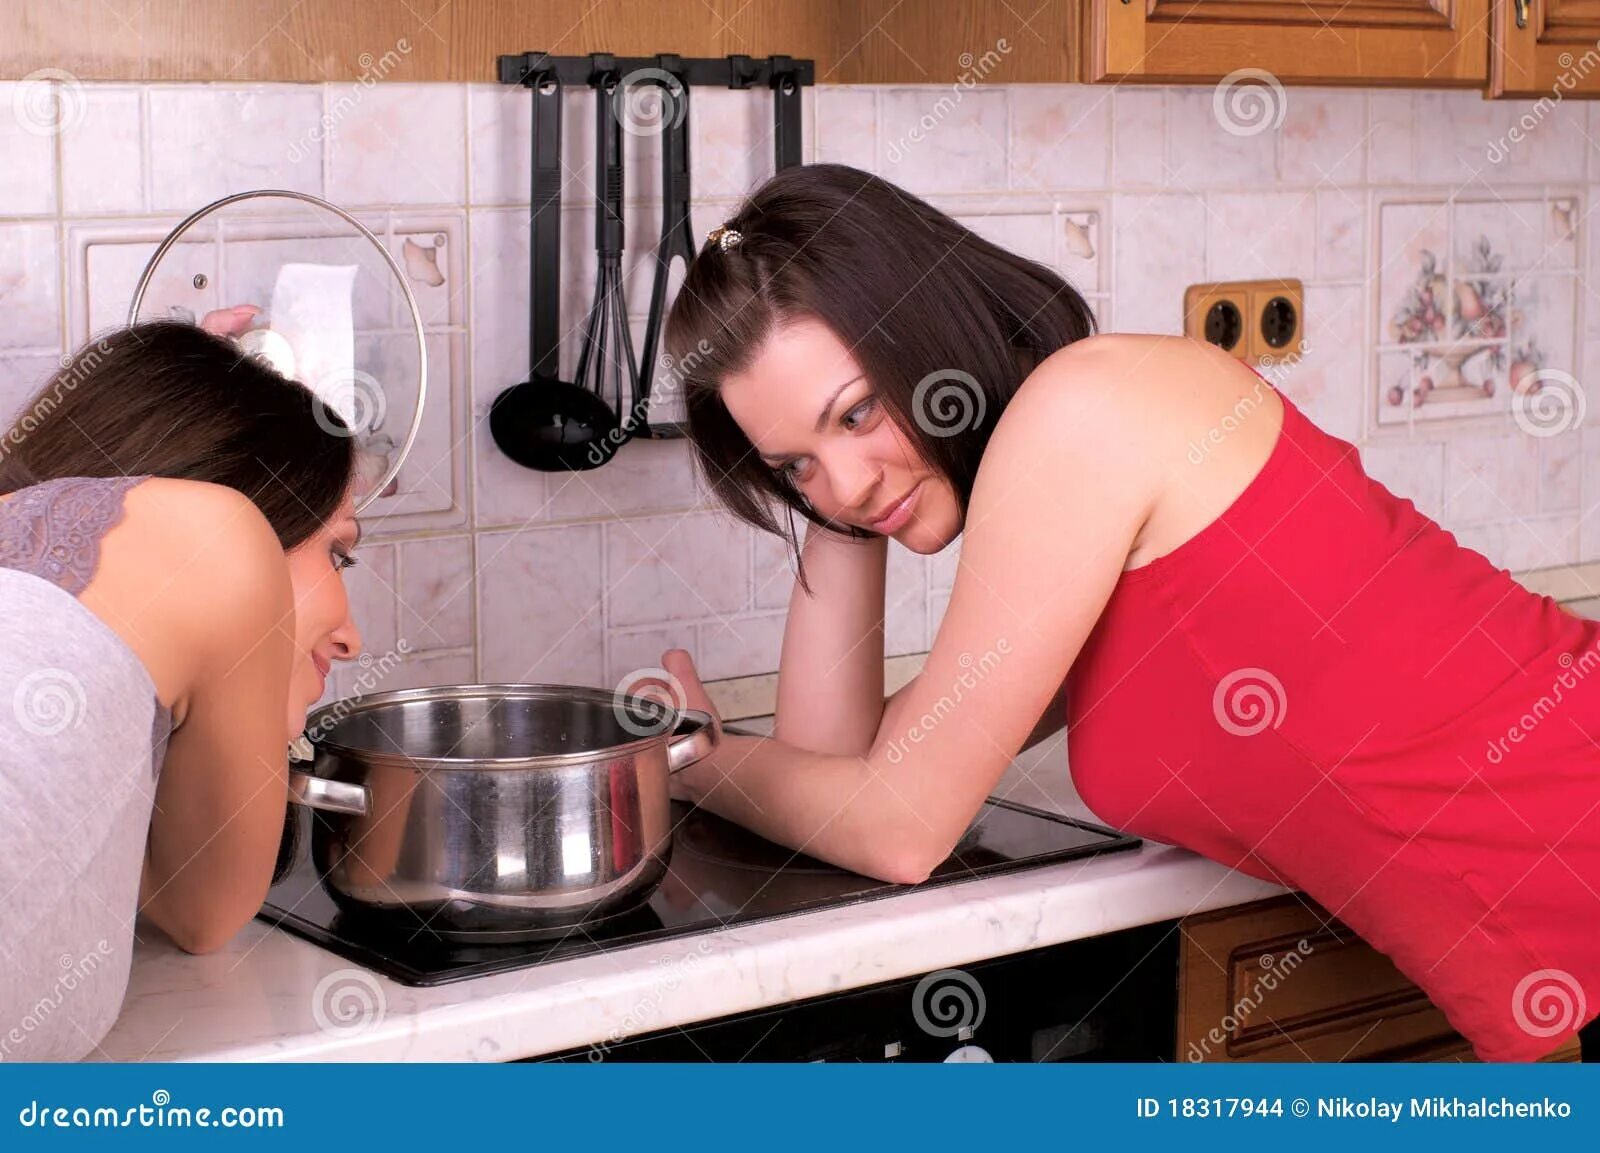 Сядь на кухне. Фотосессия подруг на кухне. Фотосессия нескольких девушек на кухне. Две женщины на кухне. Подруги готовят на кухне.